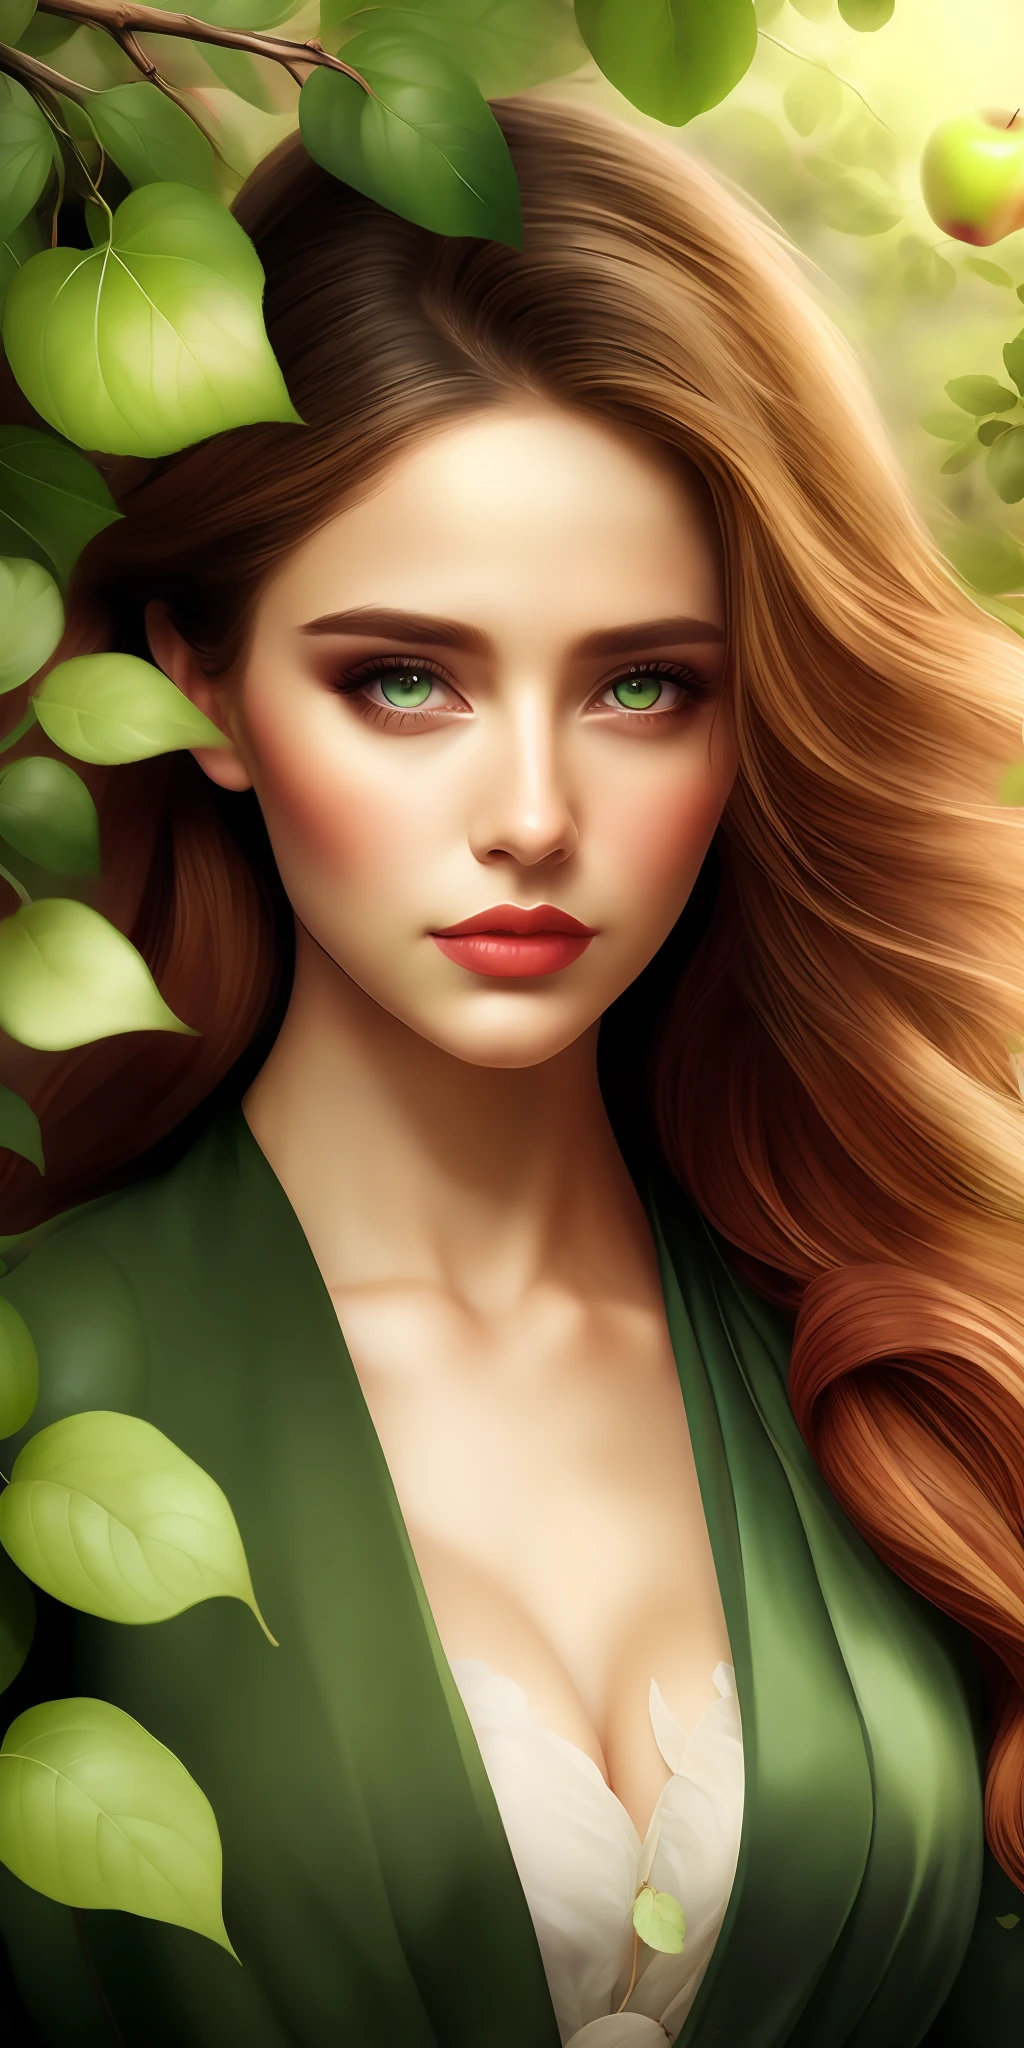 최고의 품질,최고 해상도,8K, 예술적인 일러스트레이션, 아름다운 초상화, 걸작, 가장 아름다운 여자,가장 아름다운 소녀, 탐욕스러운 눈,나뭇잎을 입은, 녹색 잎을 입고,the 가장 아름다운 소녀 in profile in front of 사과나무, 탐욕스러운 눈,,사과나무,가지에 사과가 있다